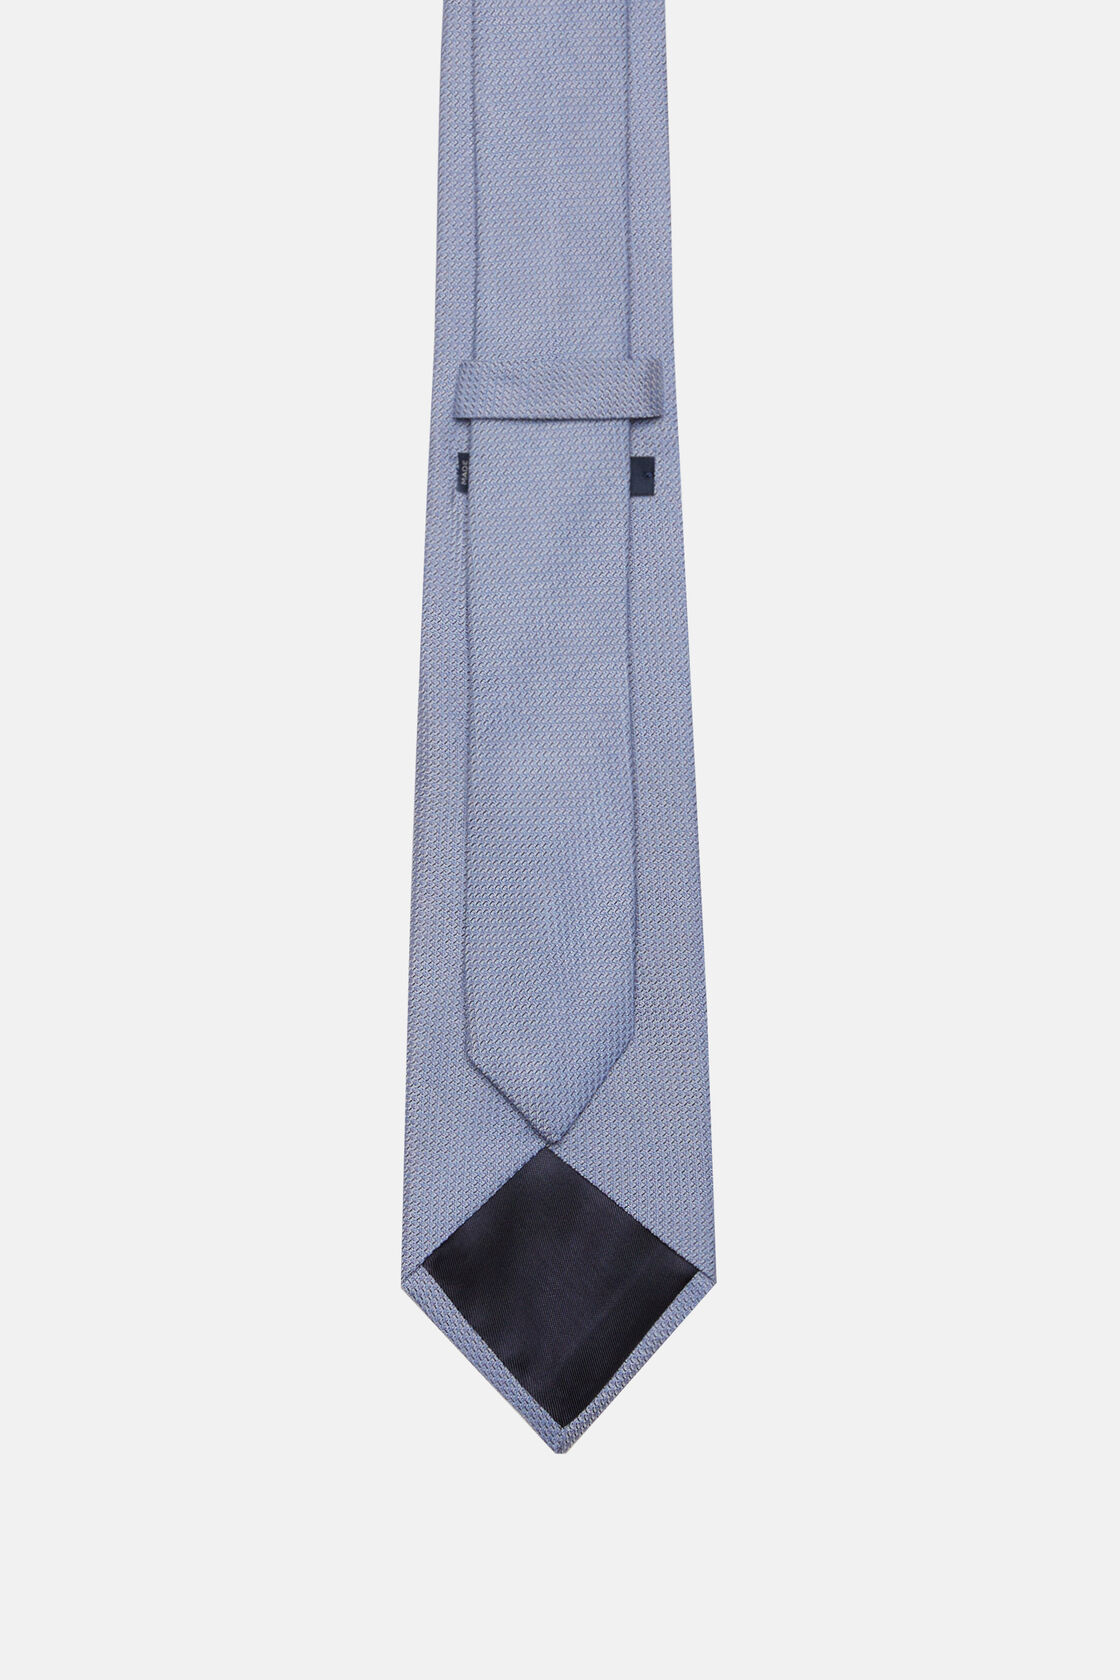 Μεταξωτή επίσημη γραβάτα, Light Blue, hi-res